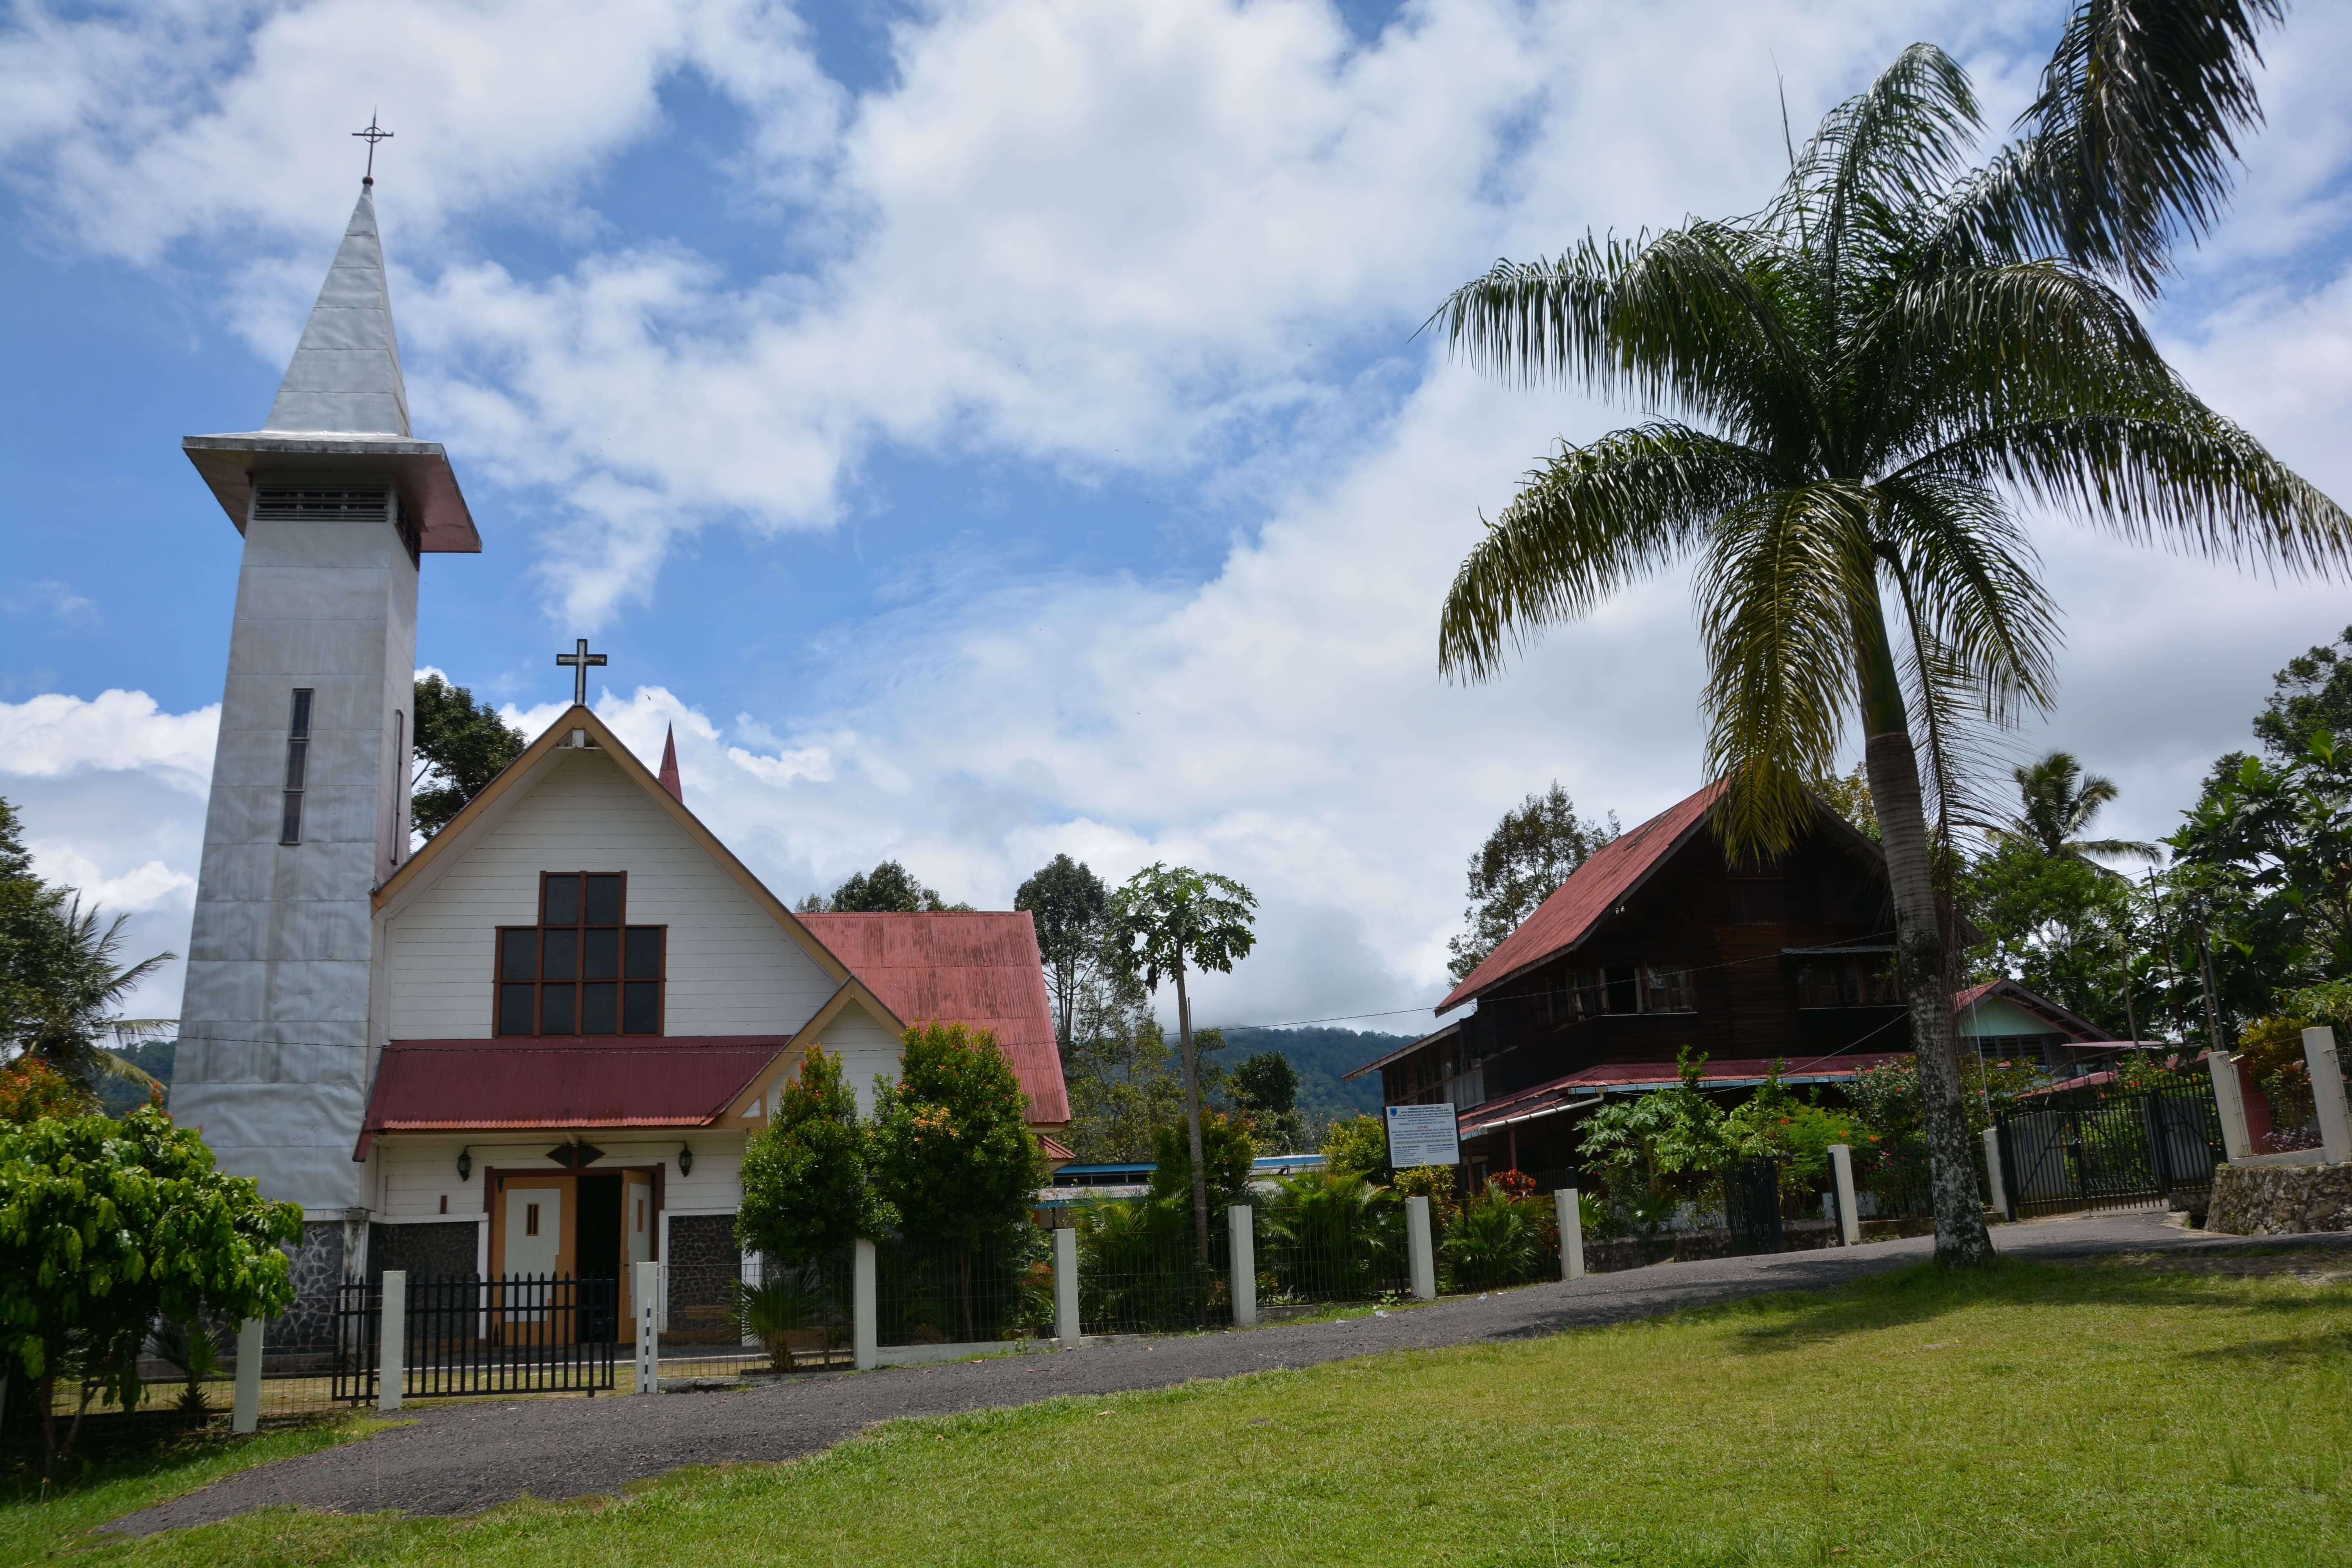 Bukan Palembang, Pemukiman Kecil di Kaki Gunung Dempo ini Awal Misionaris Kristen Menapak di Sumsel